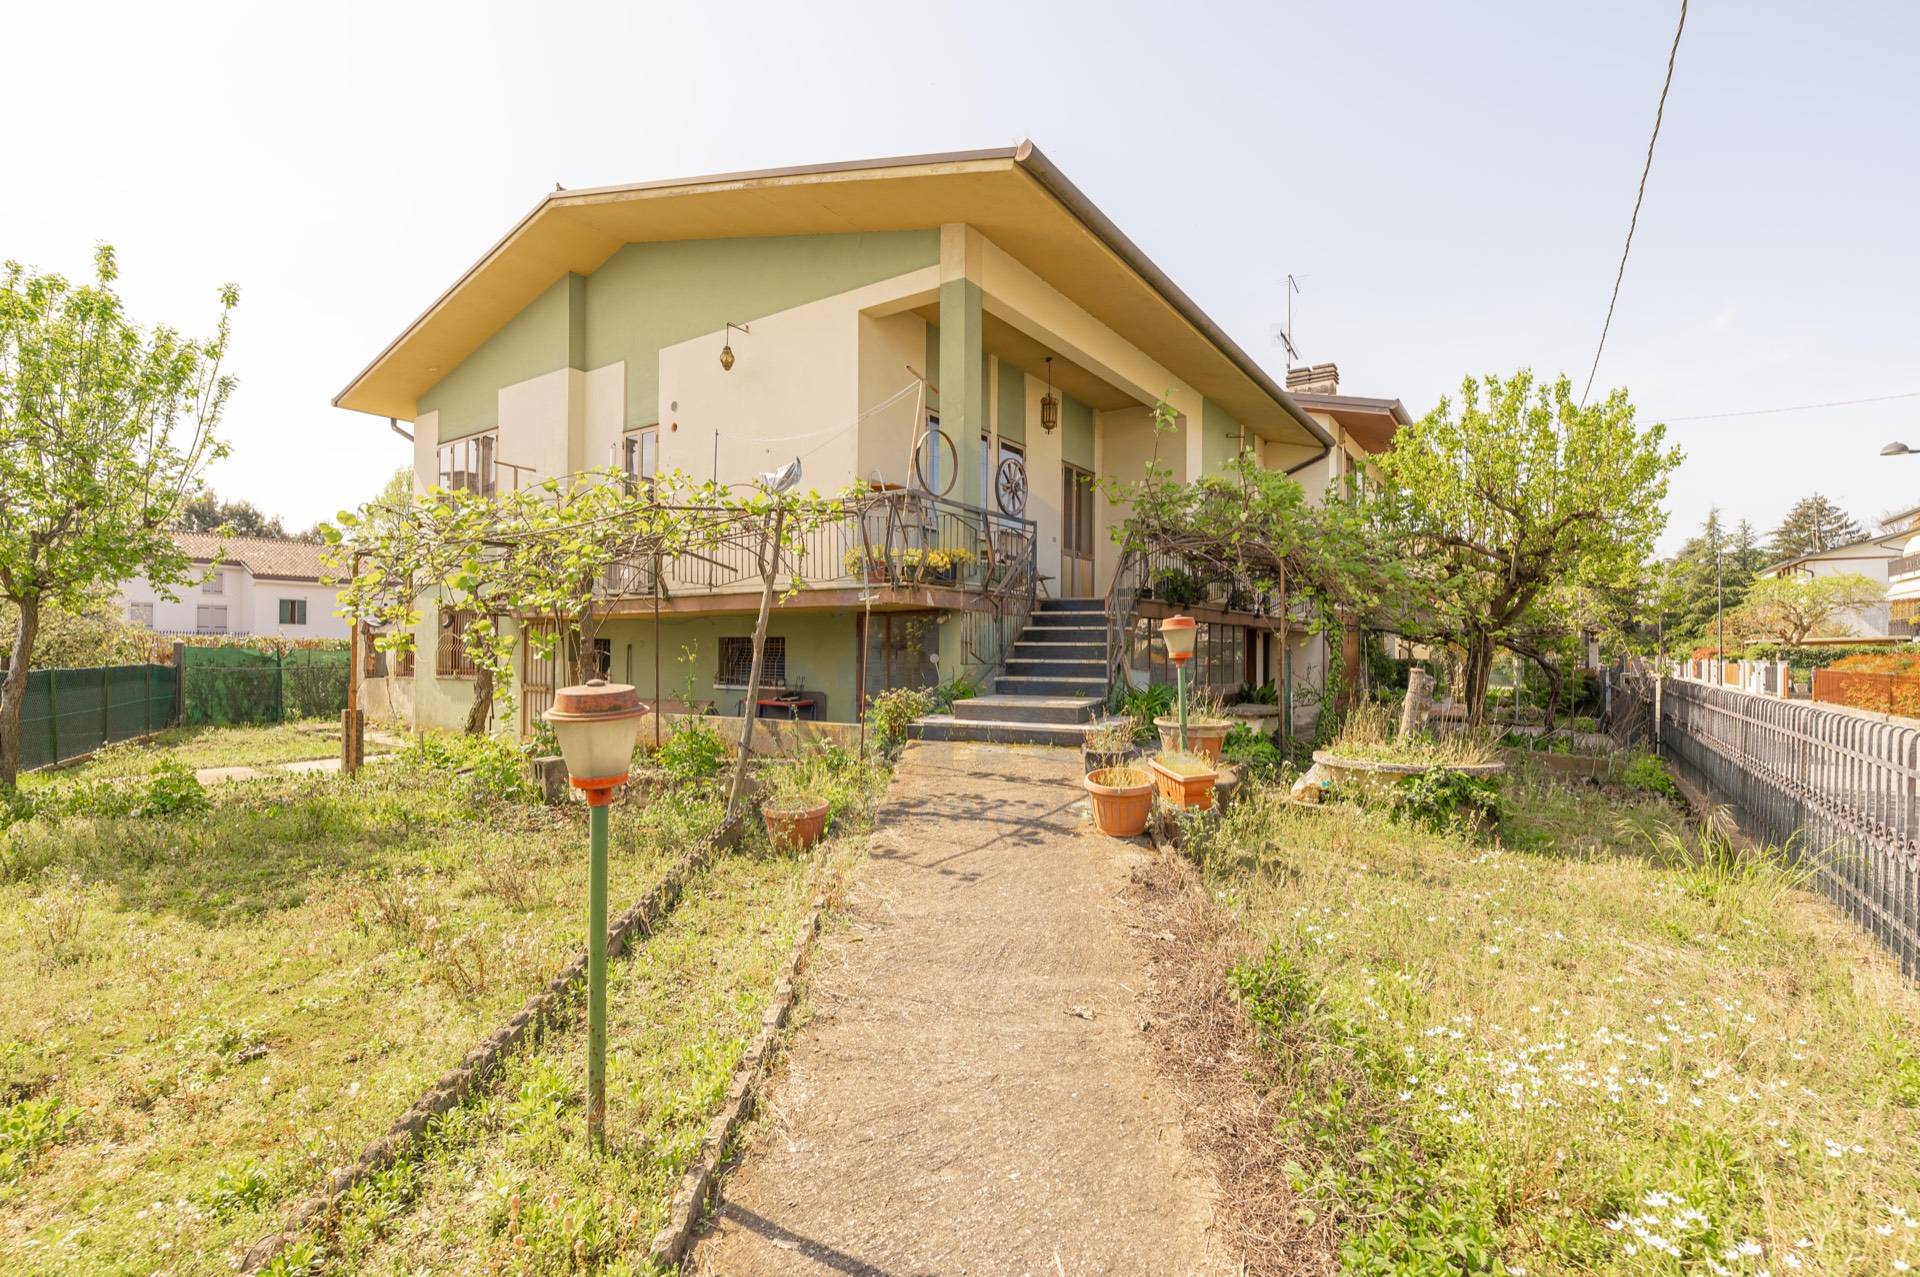 Villa Bifamiliare in vendita a Silea, 8 locali, zona ago, prezzo € 200.000 | PortaleAgenzieImmobiliari.it